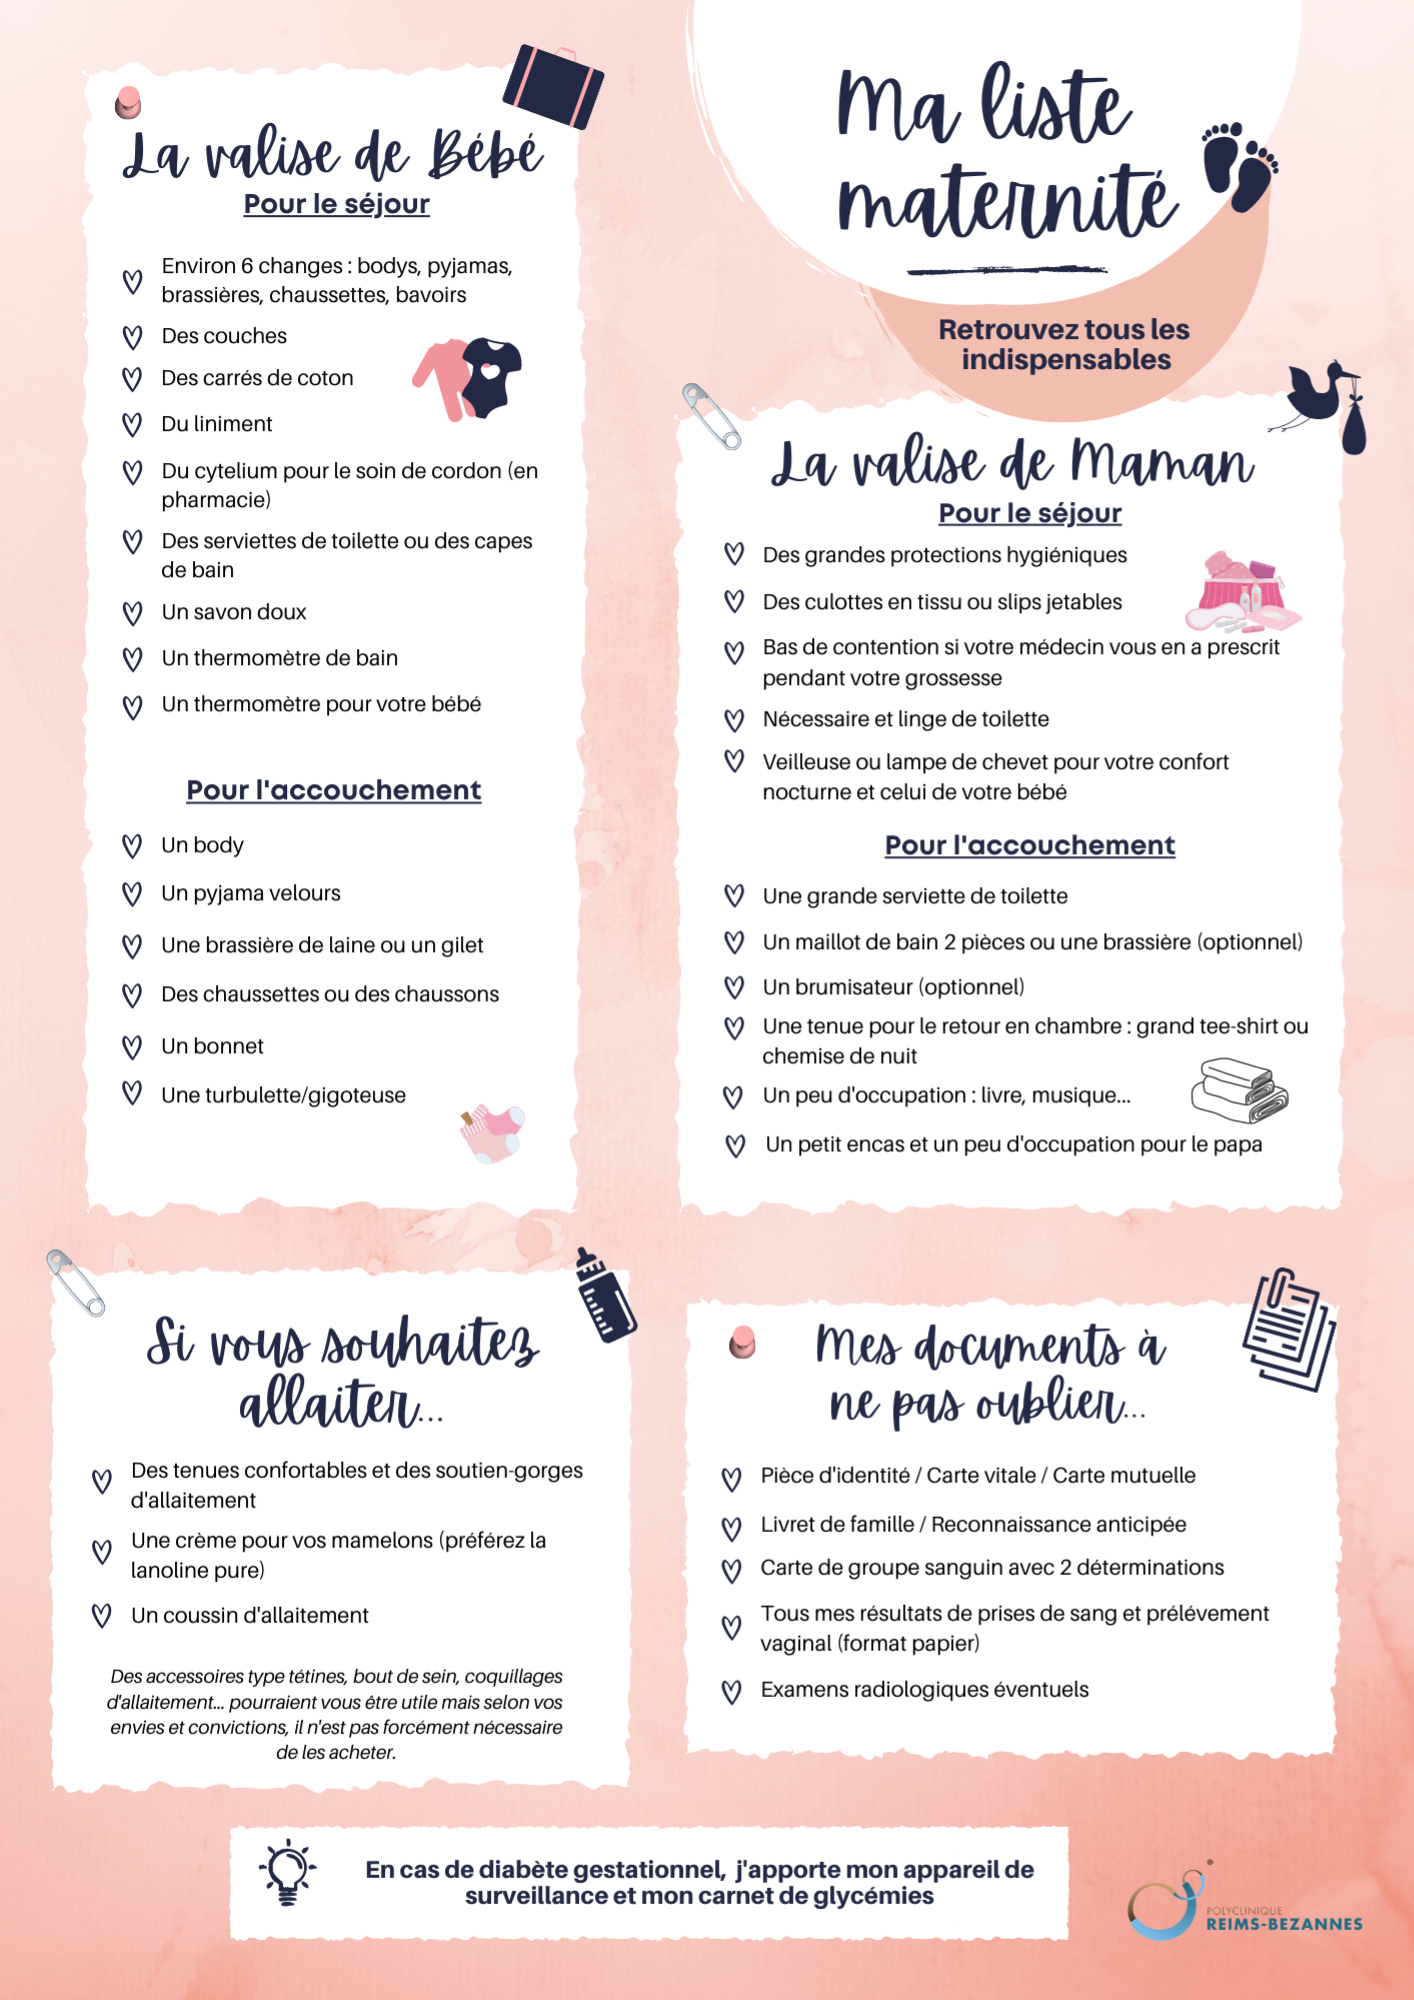 La valise de maternité : La liste des essentiels